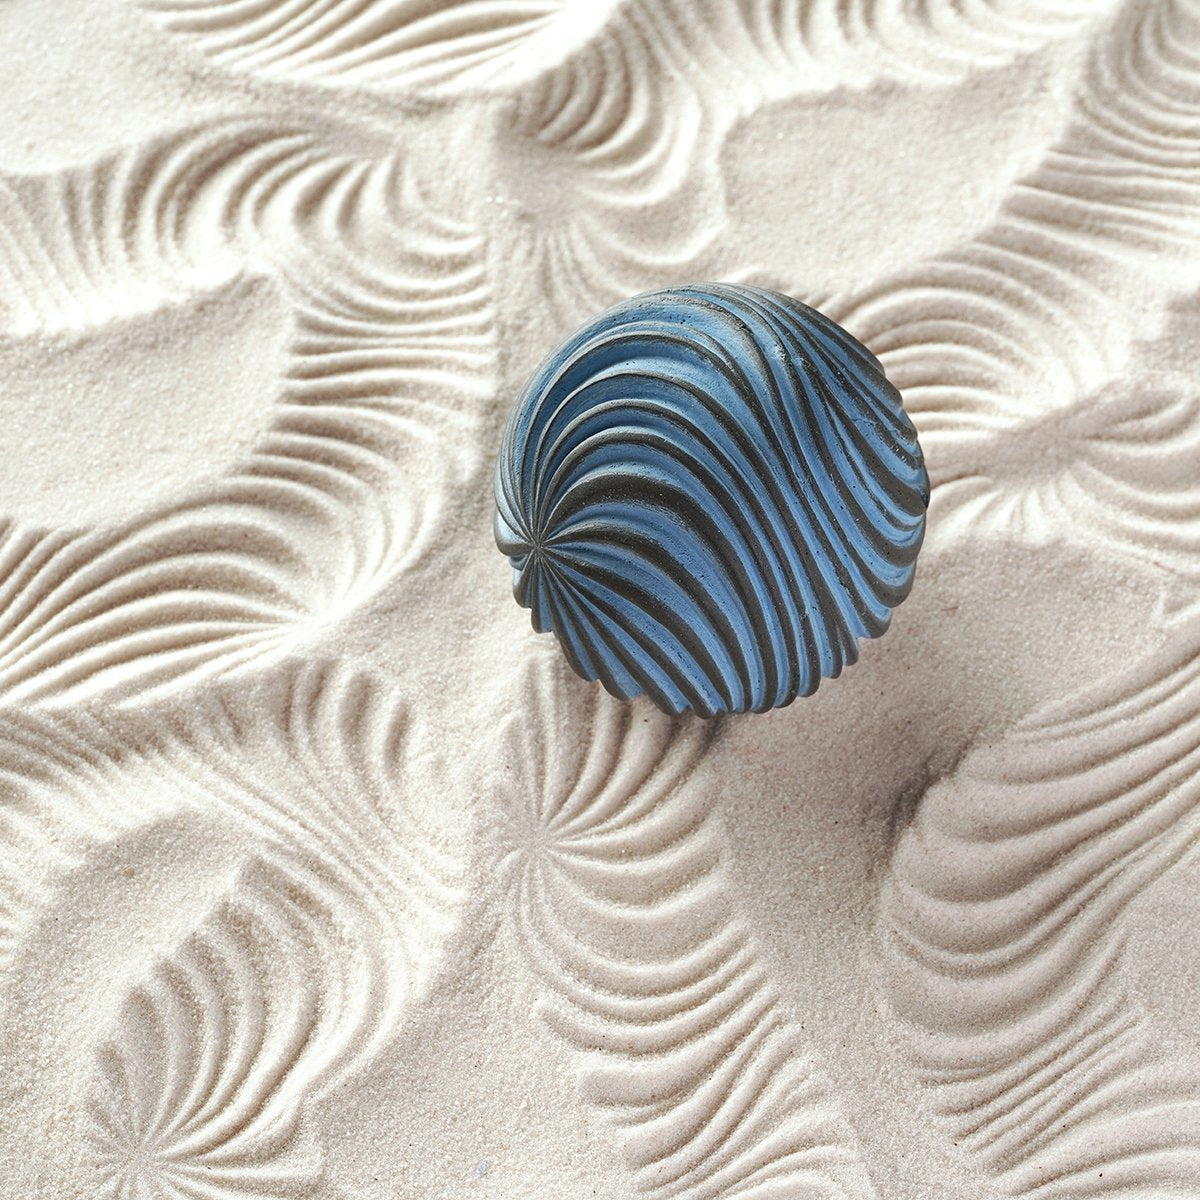 Zen Garden - Sand Spheres